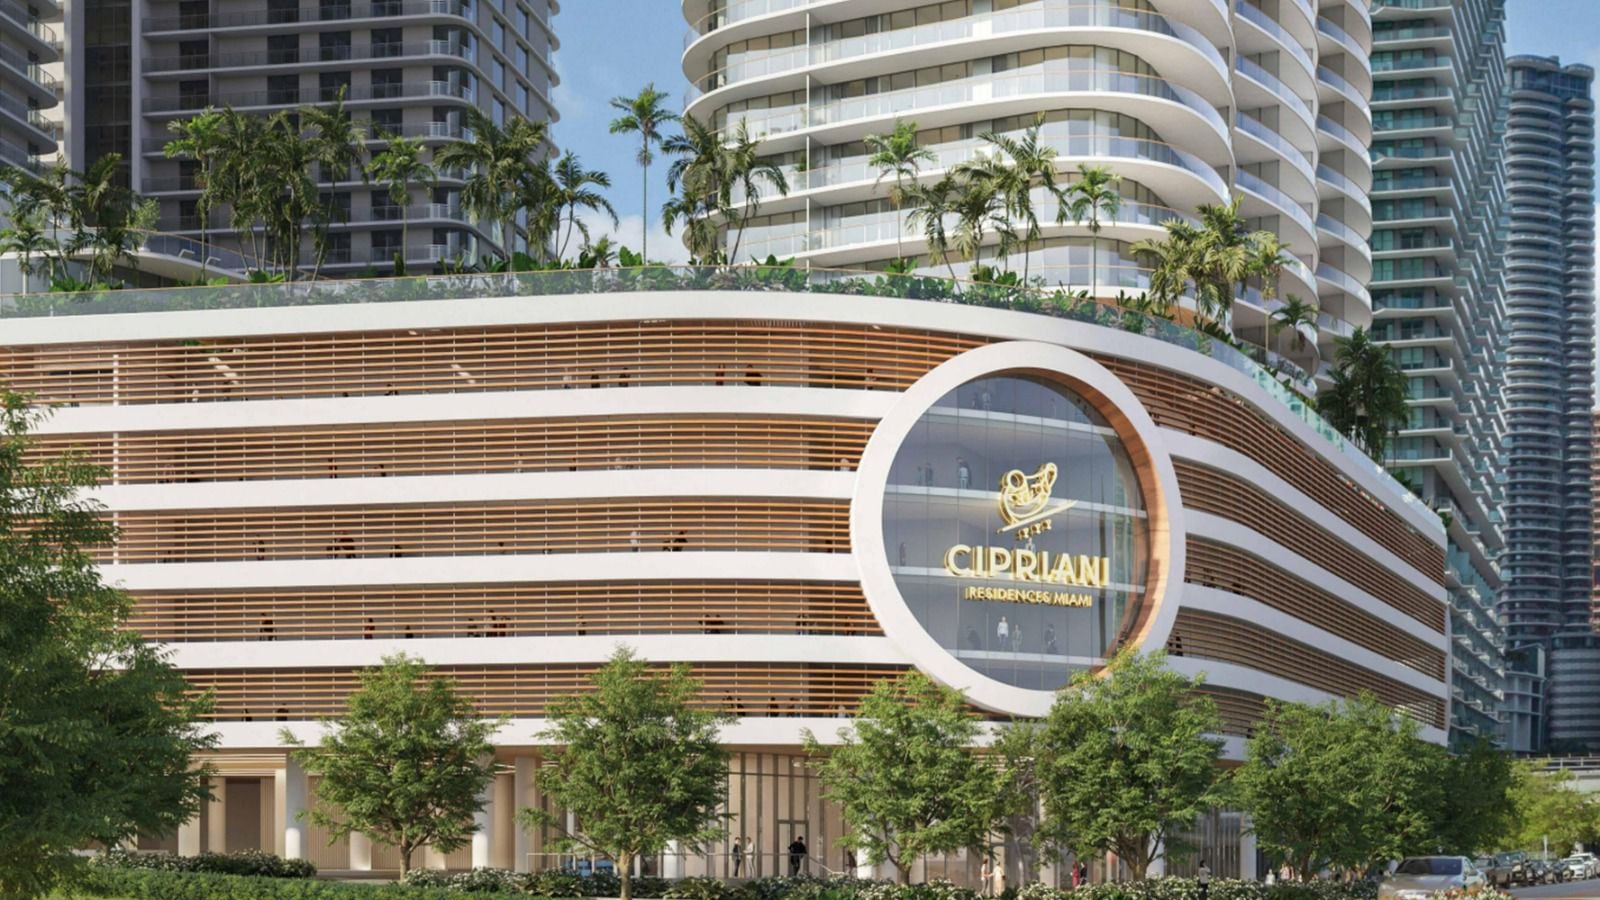 Cipriani Residences, condominio en el que invirtió Carlos Slim, estará en el céntrico barrio Brickell de Miami.